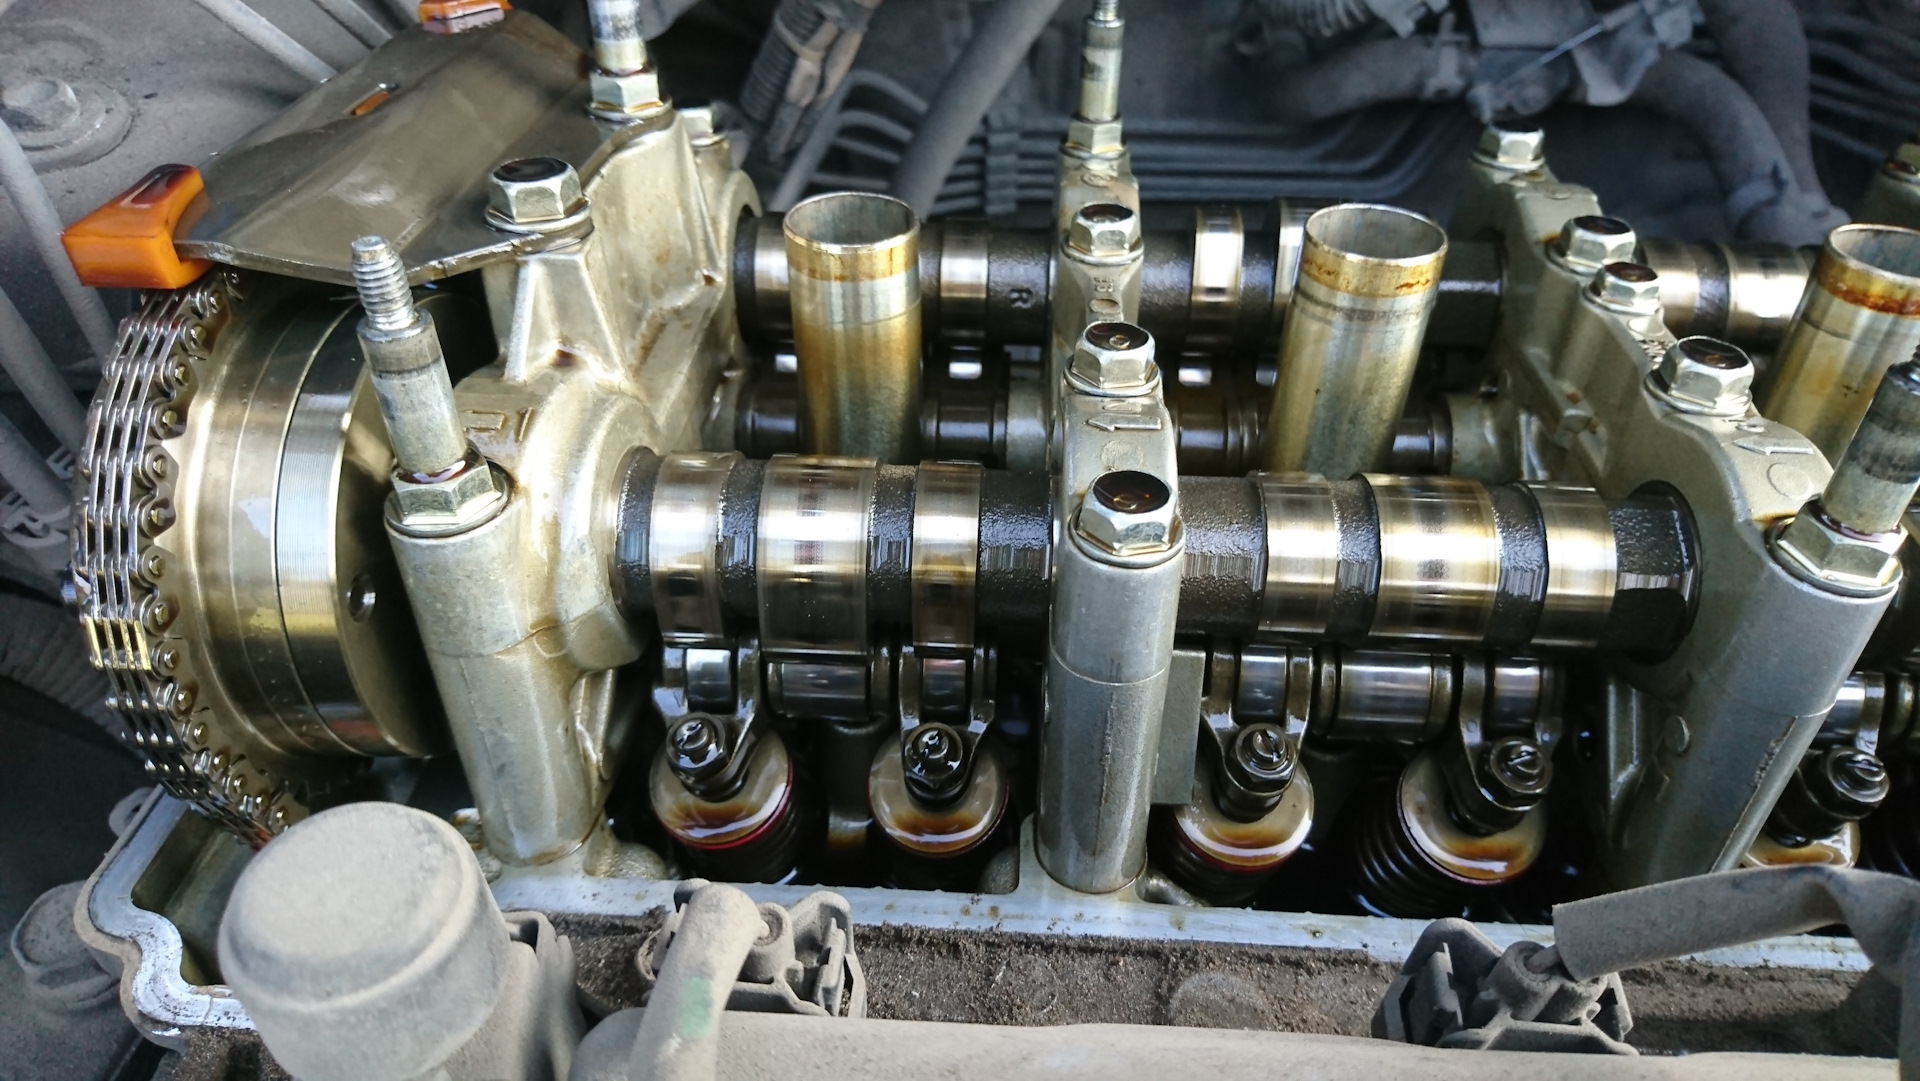 Когда нужно регулировать клапана. Lexus rx350 регулировка клапанов. Направляющие клапанов BSE 1.6 артикул. Регулировка клапанов r1200gs k25. Регулировать клапана Примаси.